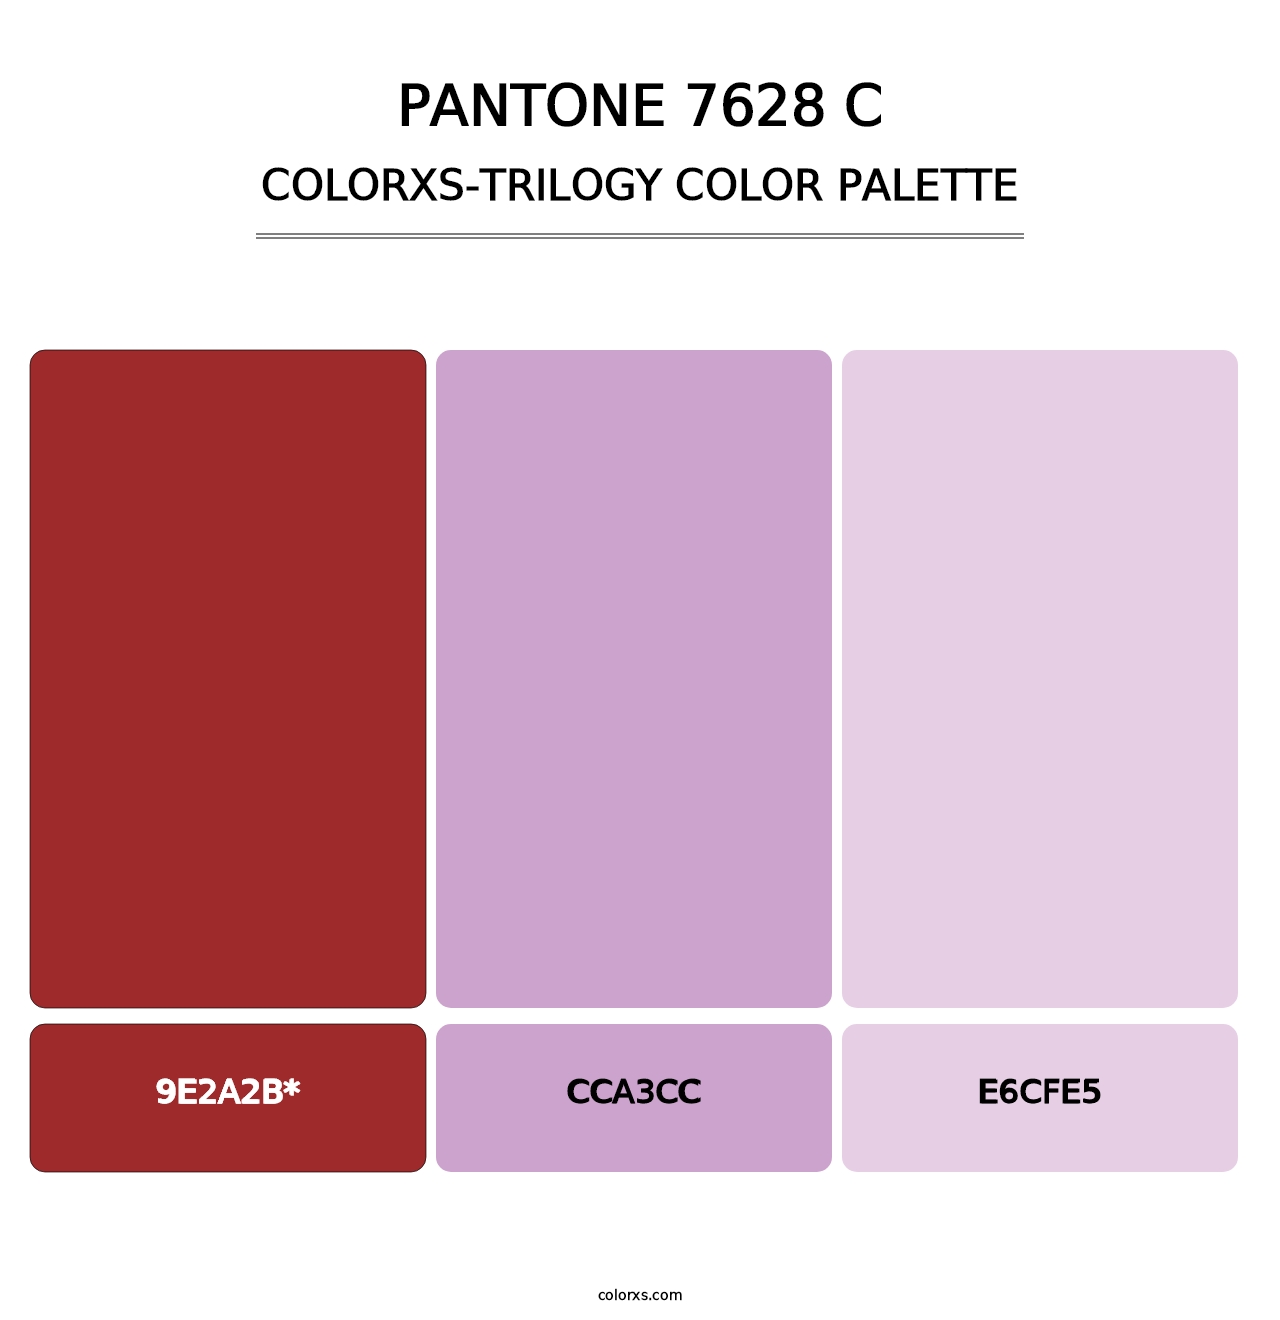 PANTONE 7628 C - Colorxs Trilogy Palette